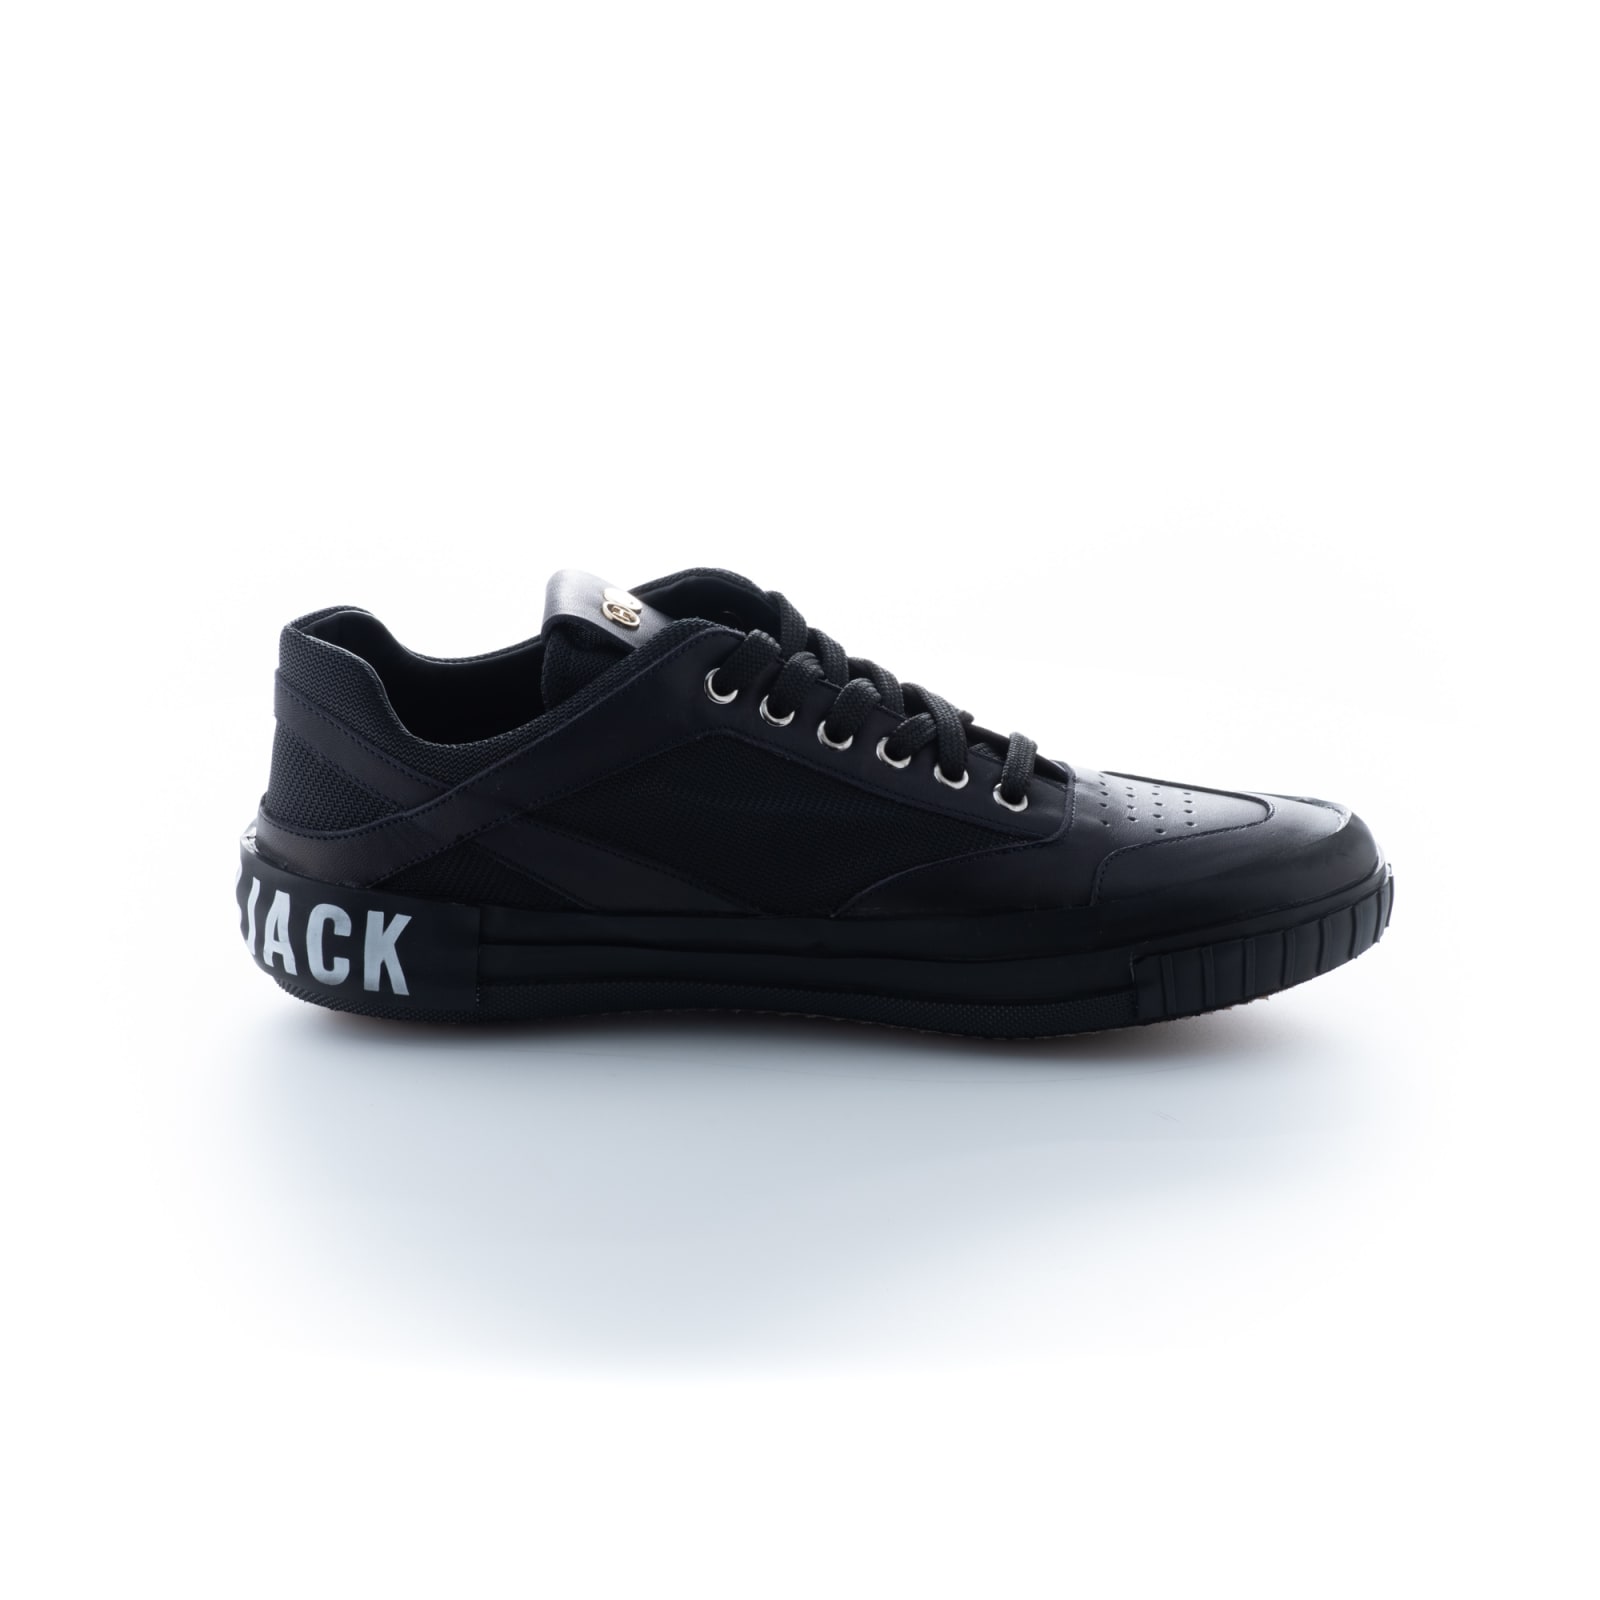 Hide & Jack Volcanic Black Sneakers